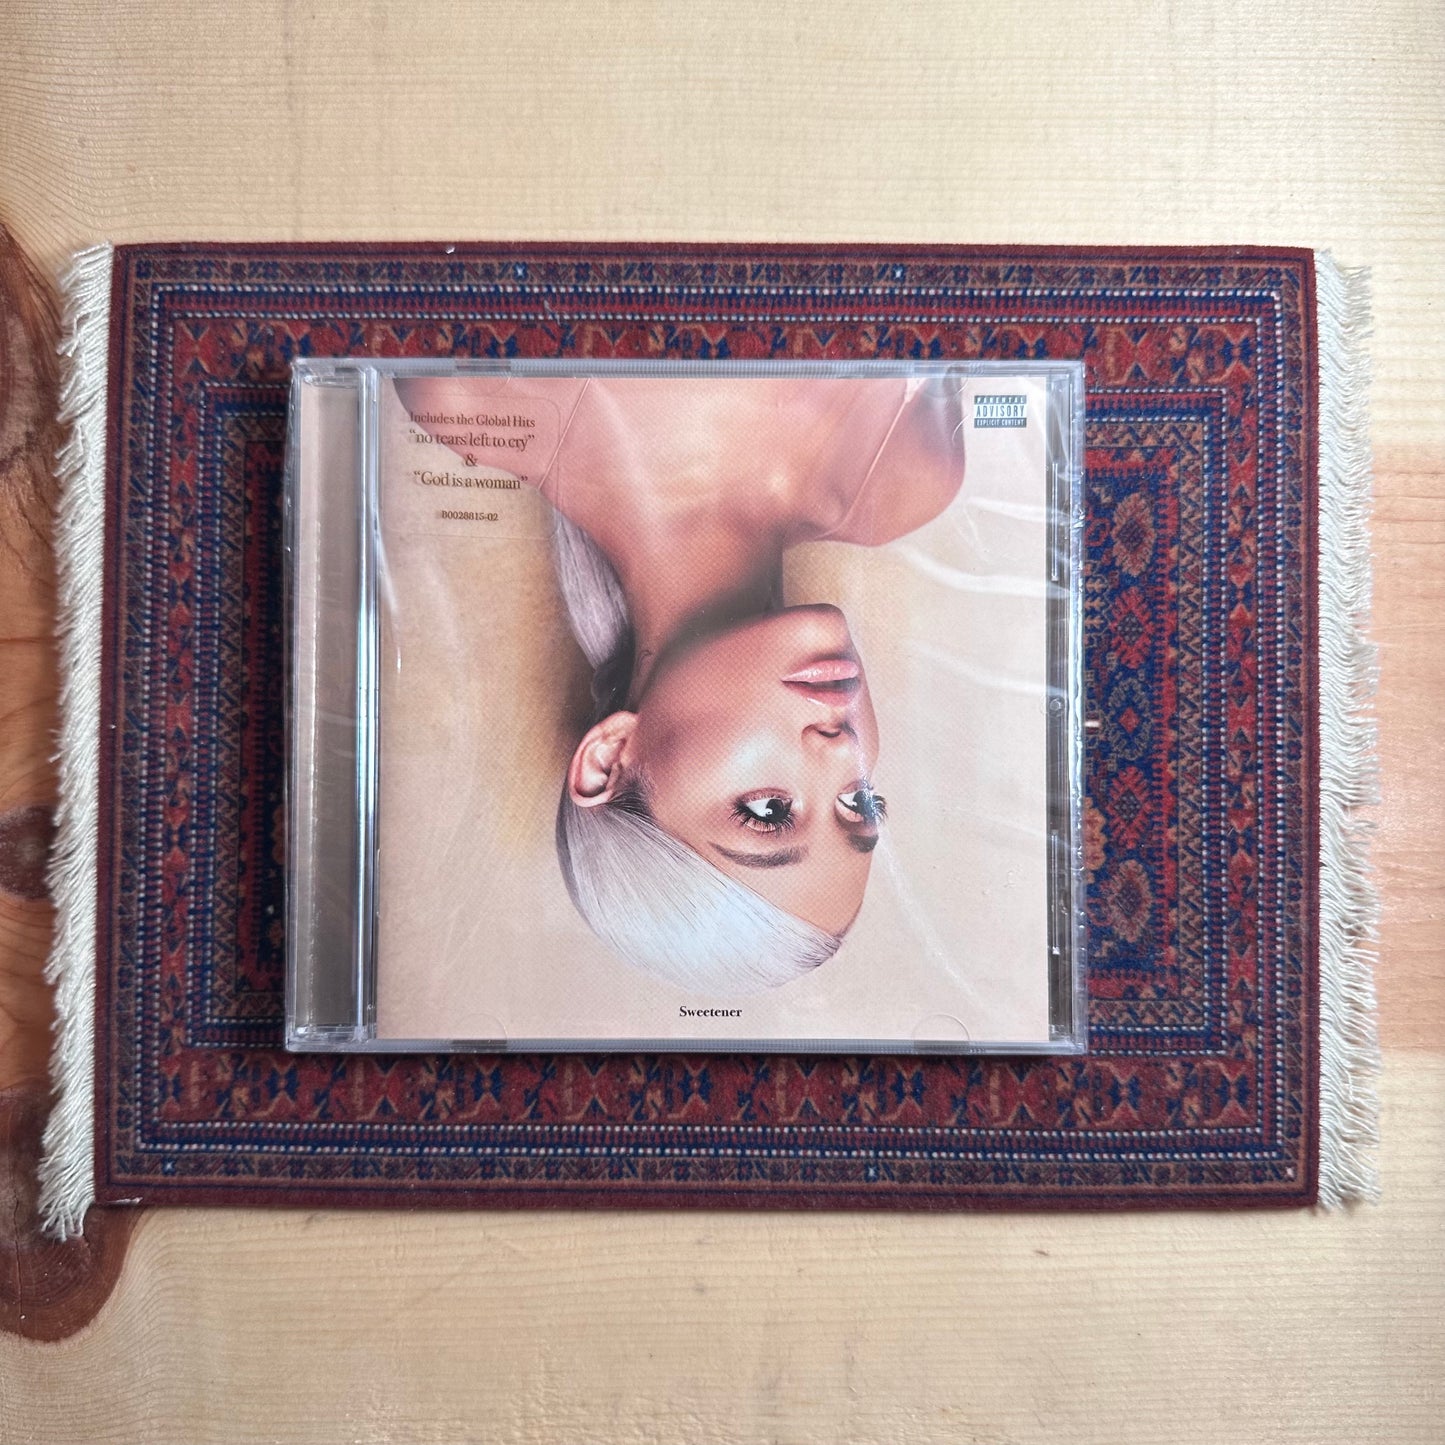 Ariana Grande - Sweetner (Explicit) [CD]